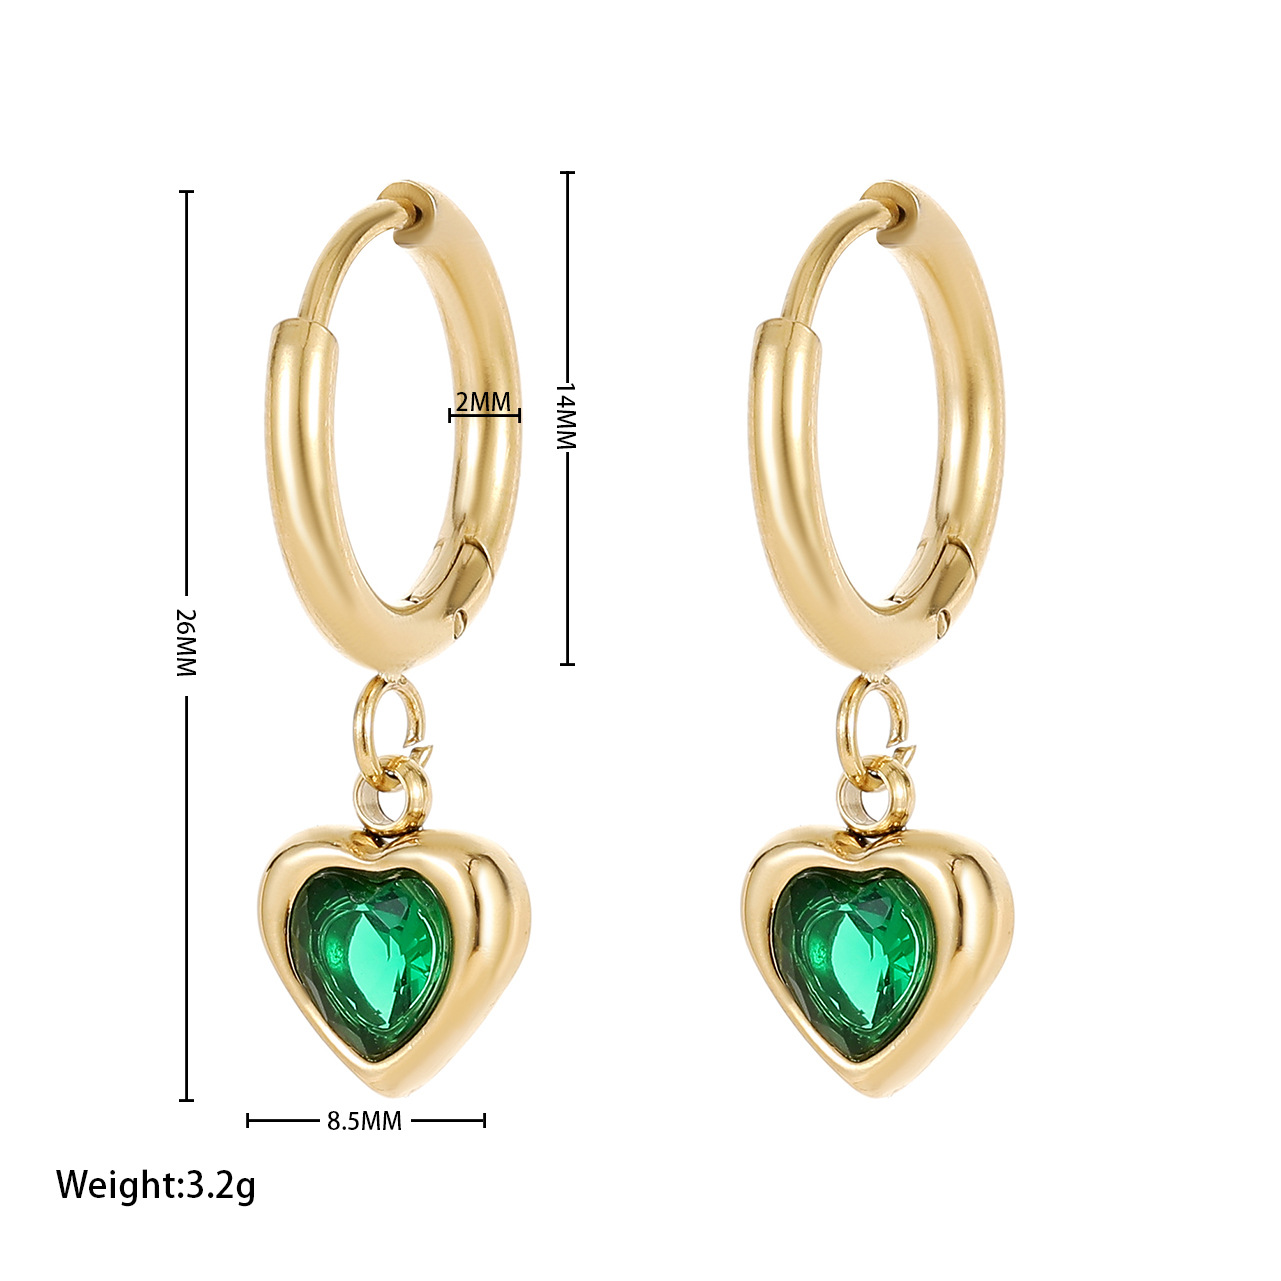 2:Earrings - Gold green zircon